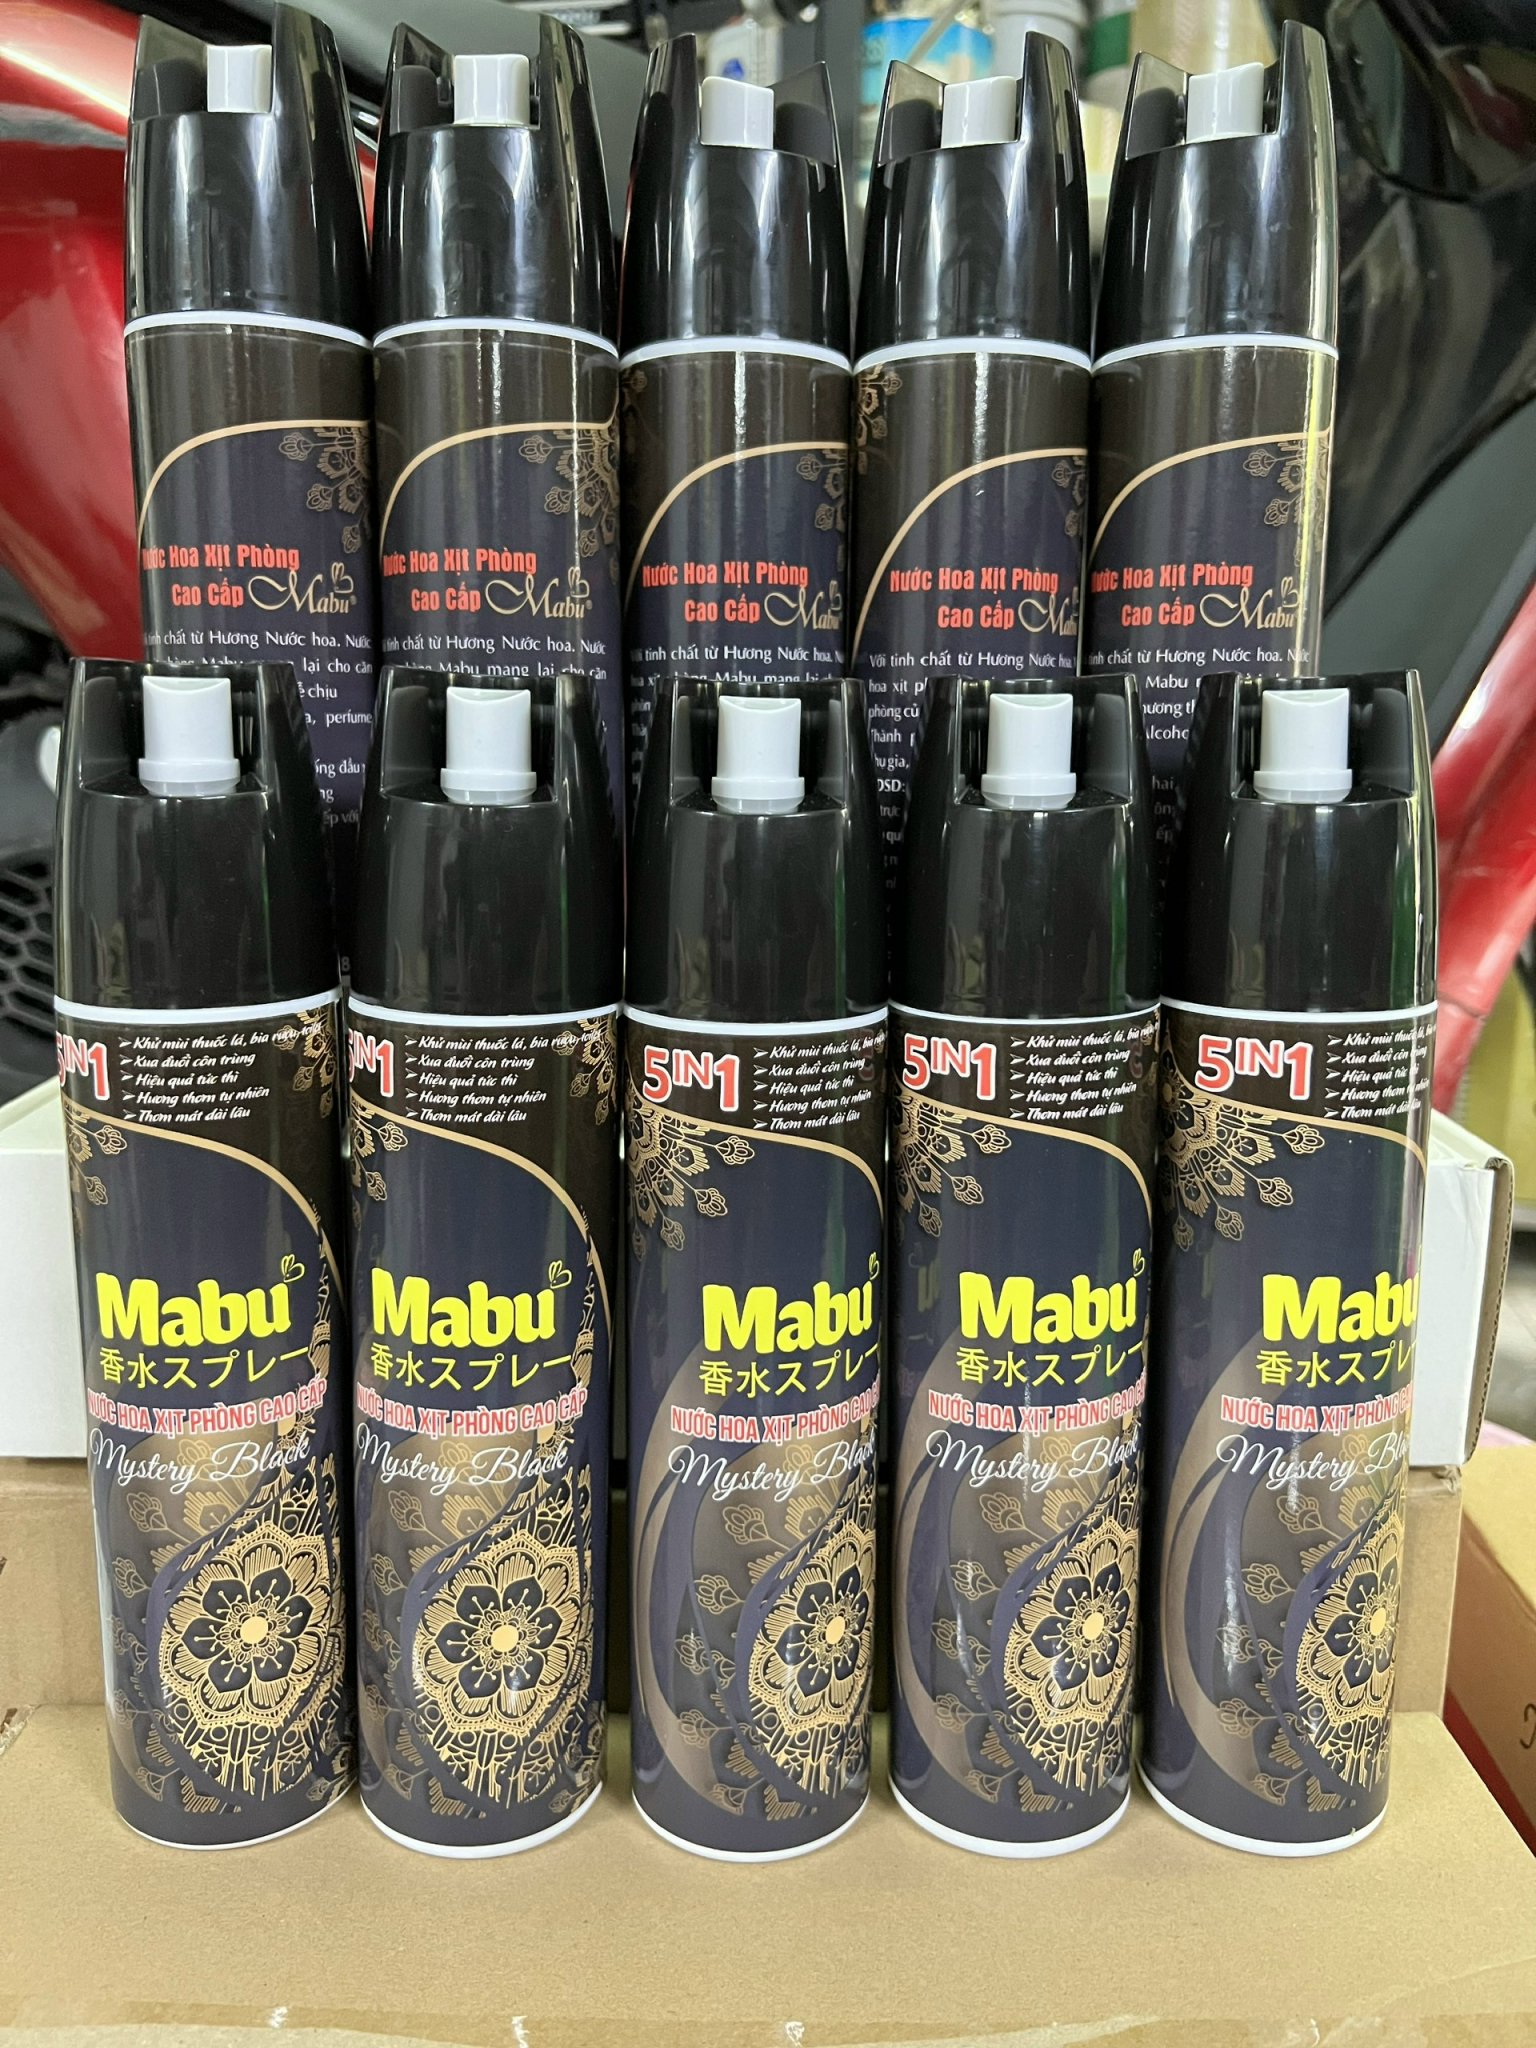 Nước hoa xịt phòng Mabu giá sỉ (combo 10 chai) hương nước hoa